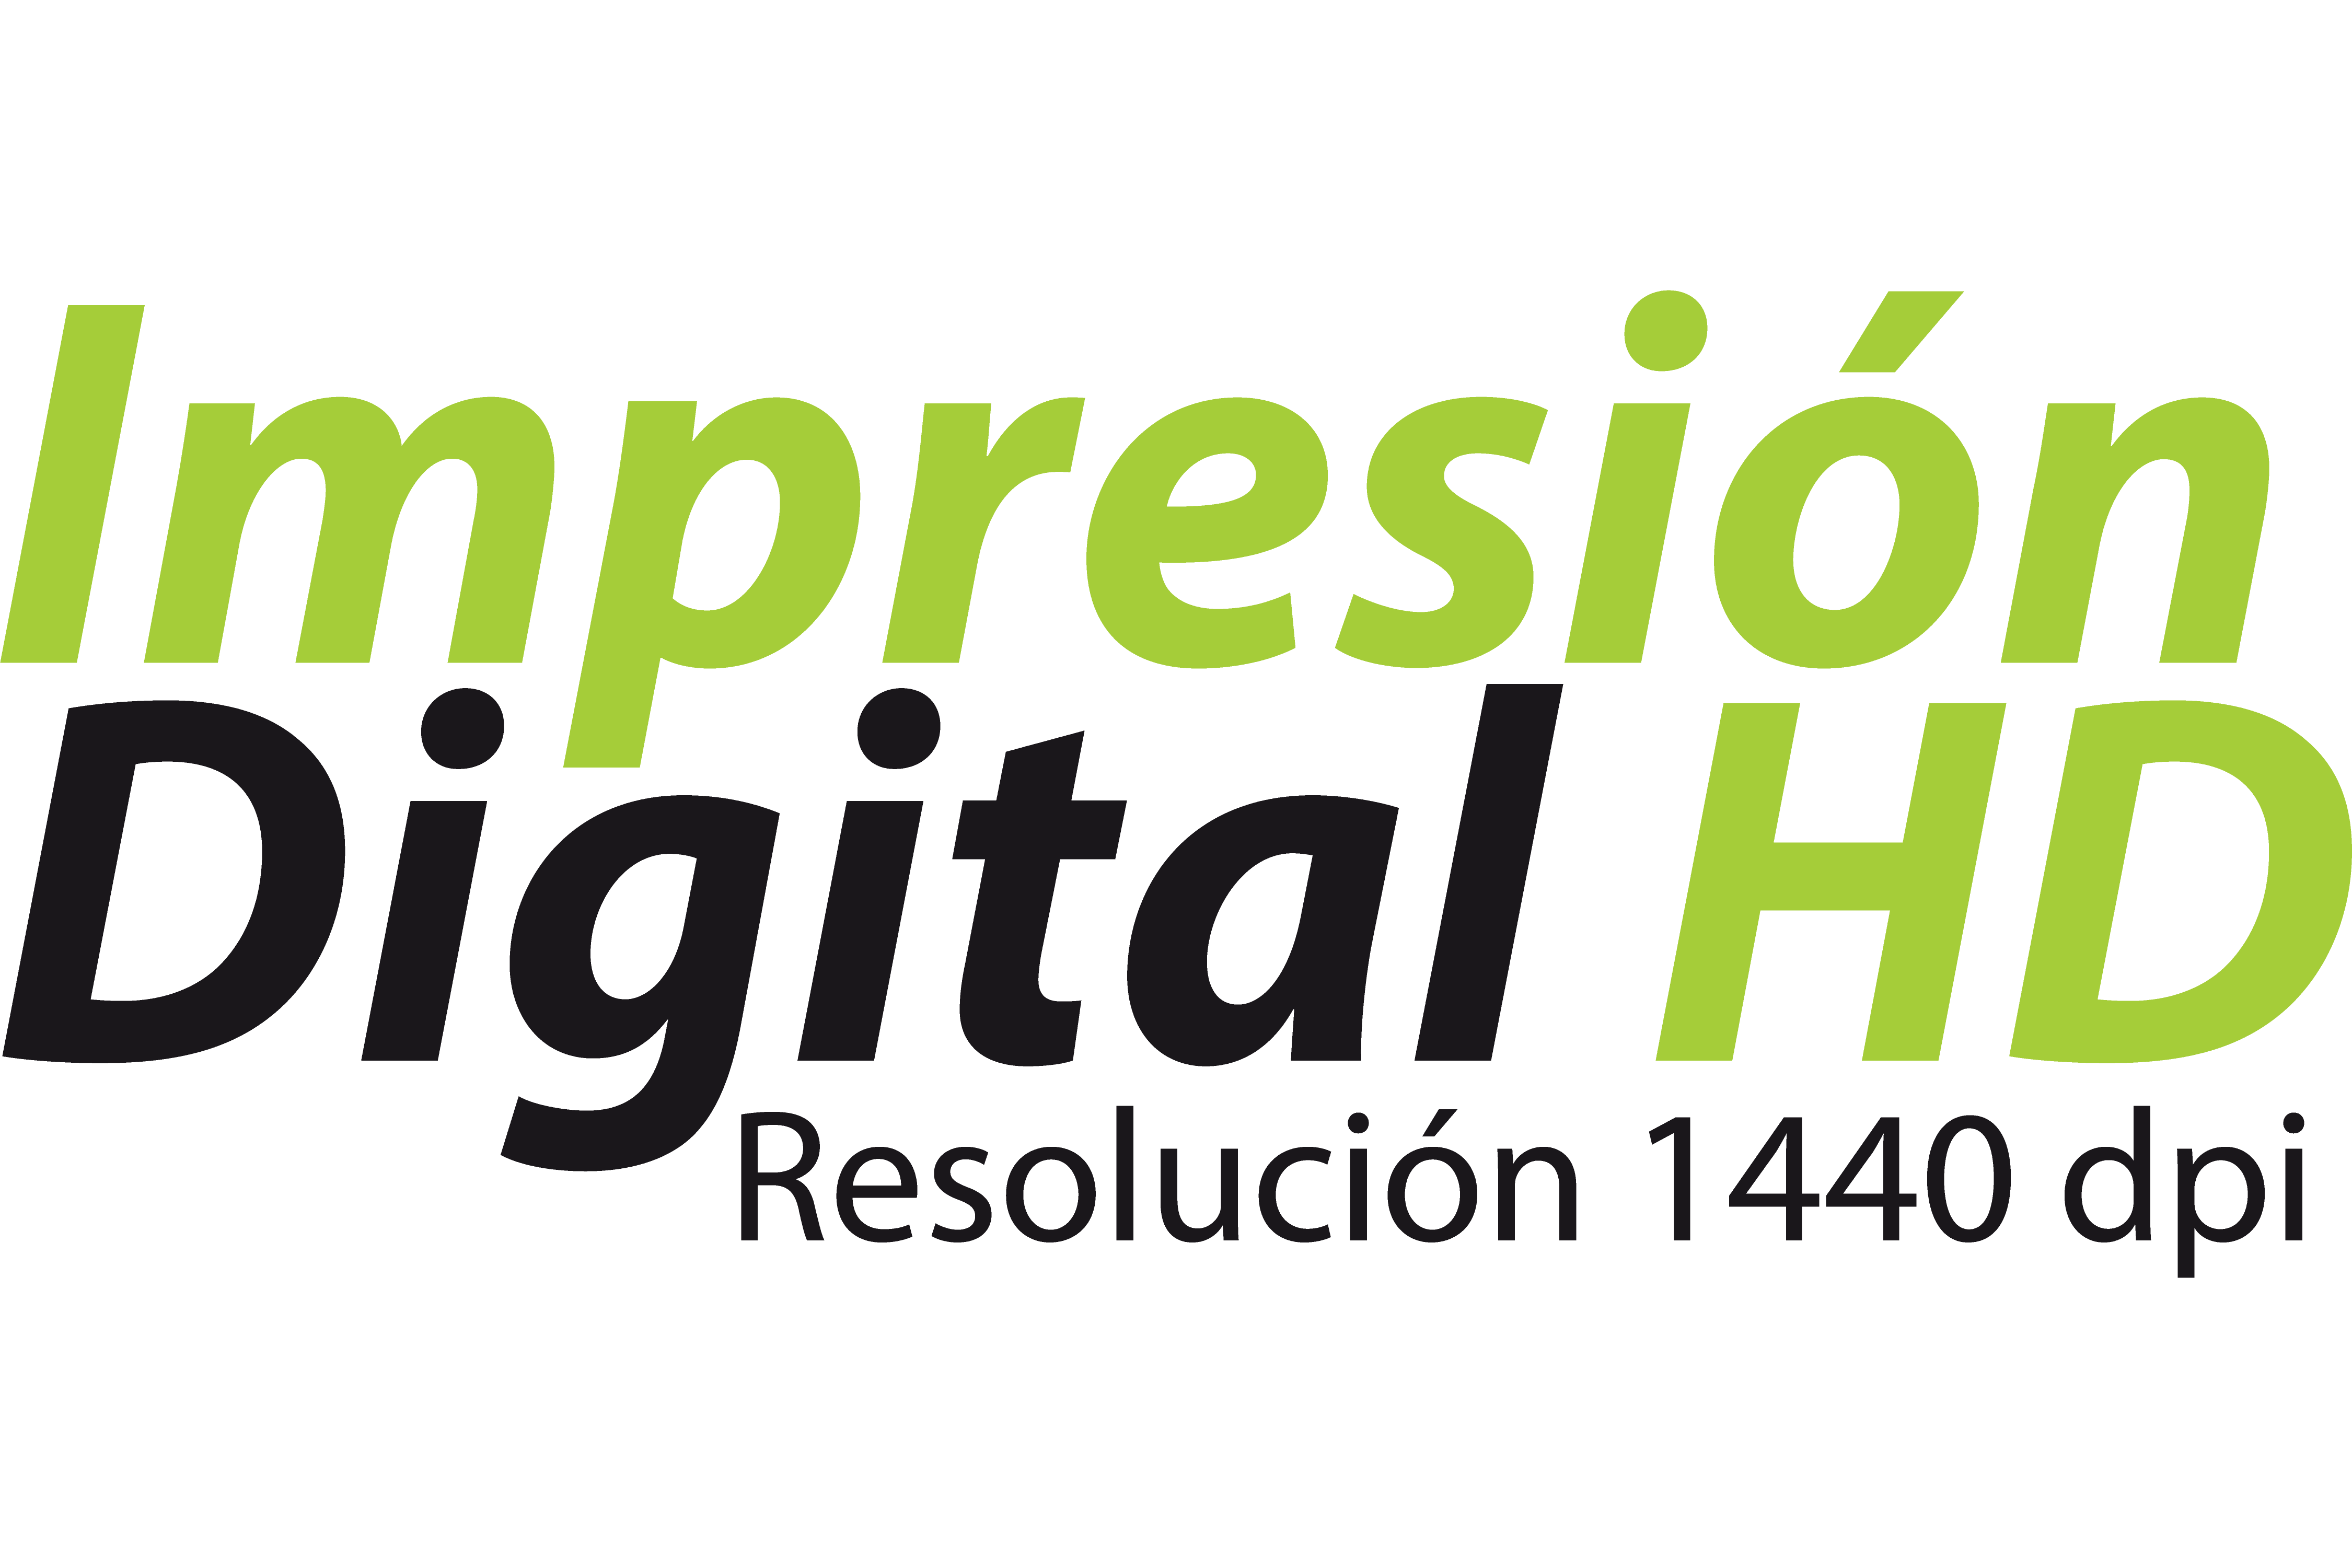 Impresión digital HD gran formato